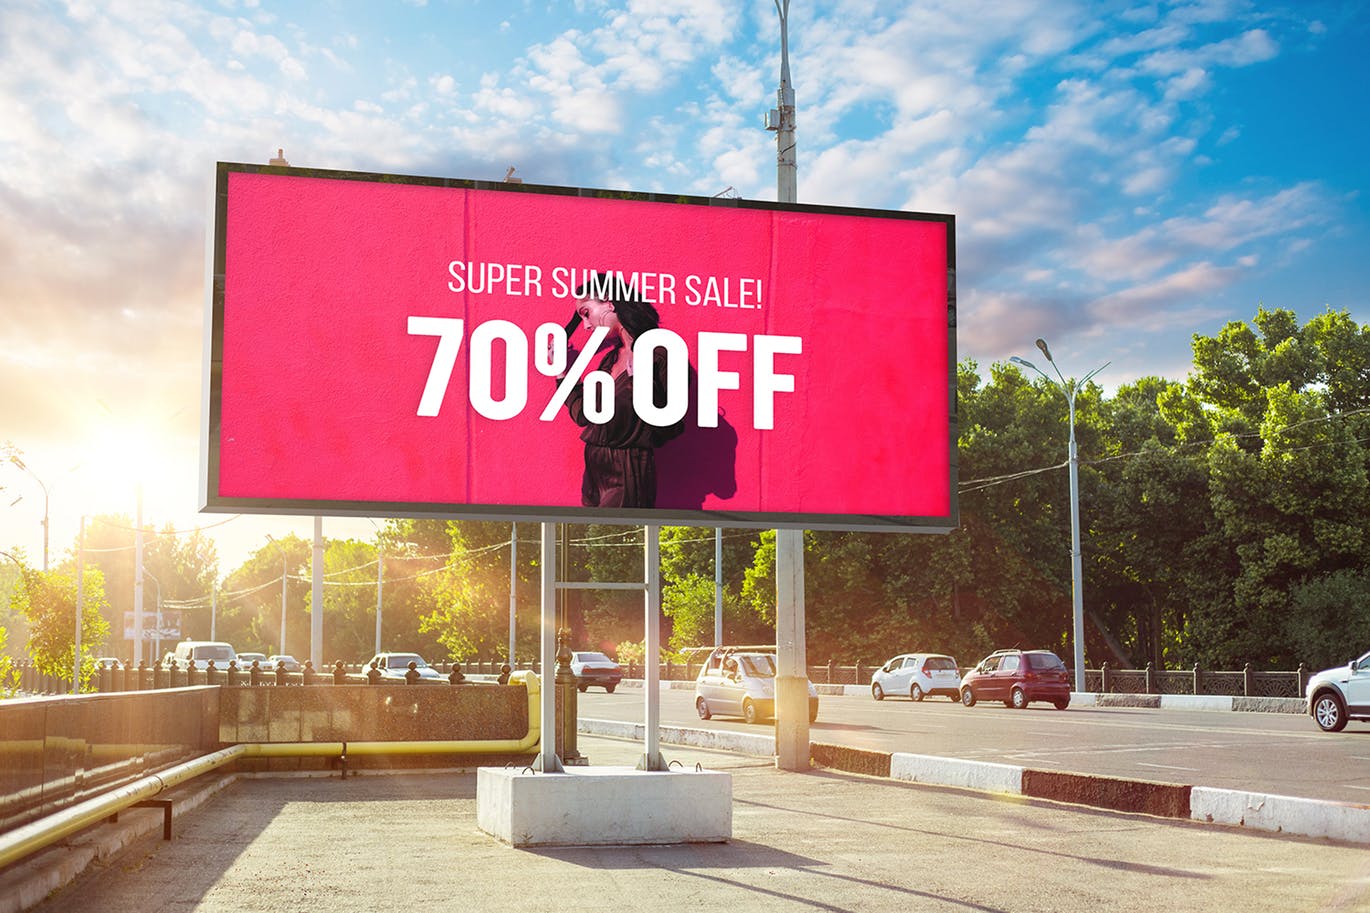 户外公路大型广告牌广告设计展示效果图样机 Advertising Billboard Mockup插图4